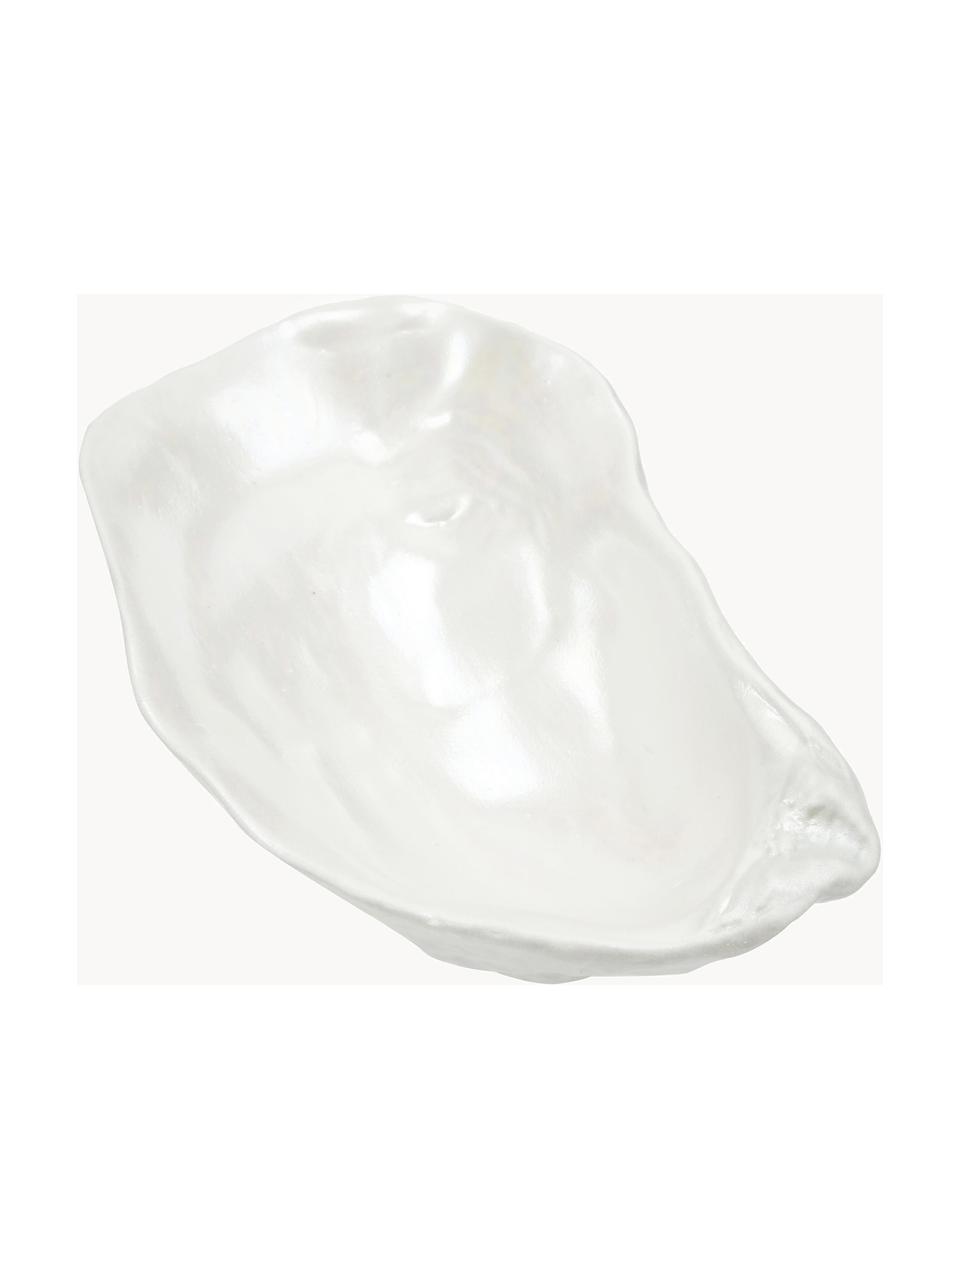 Porzellan-Dipschalen Kelia in Muschelform, 2 Stück, Porzellan, Off White, B 13 x H 4 cm